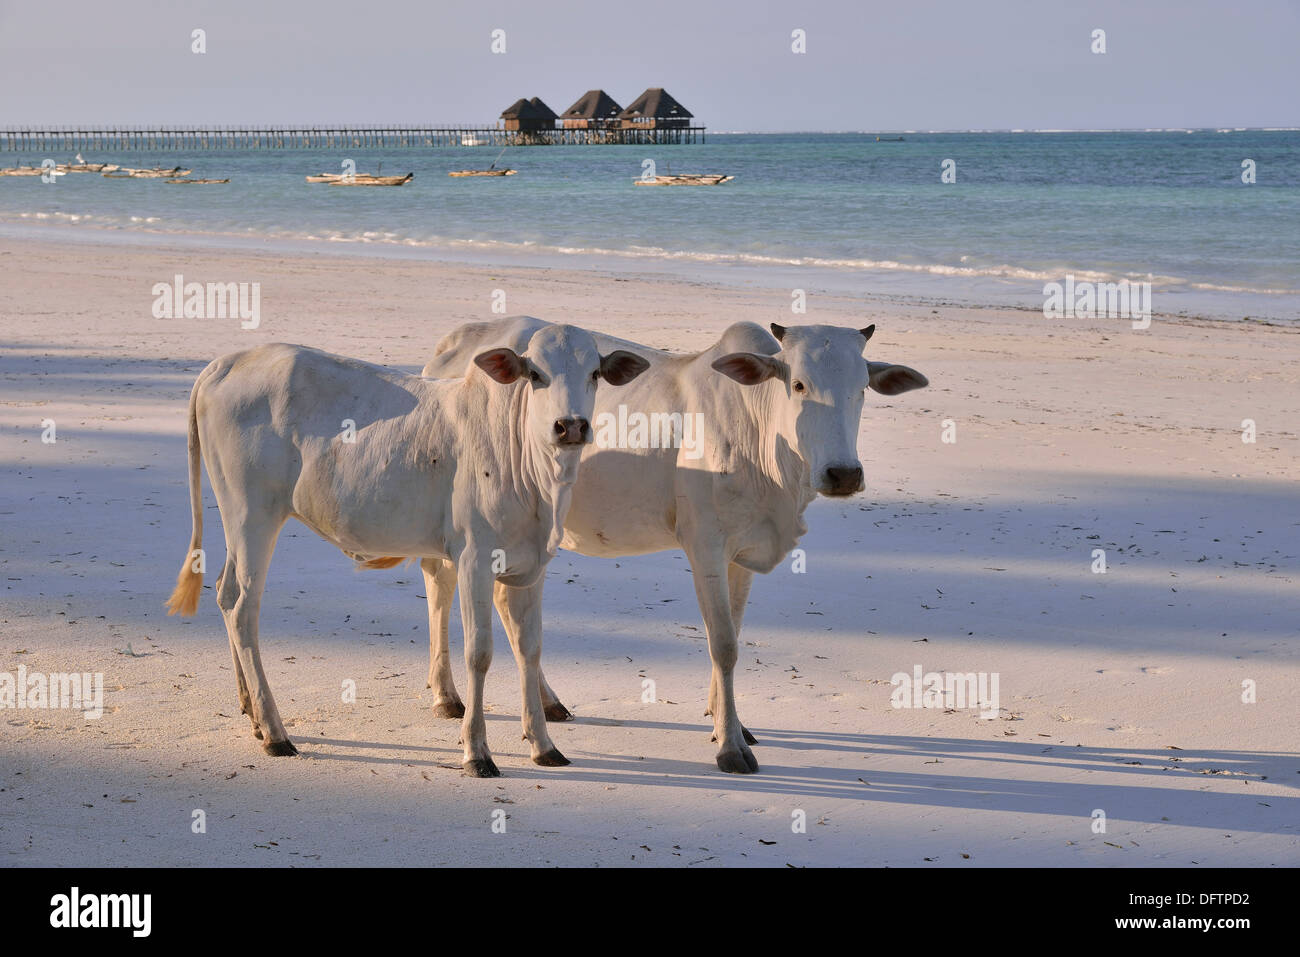 Les vaches sur la plage, Dongwe Dongwe, Zanzibar, Tanzanie Banque D'Images